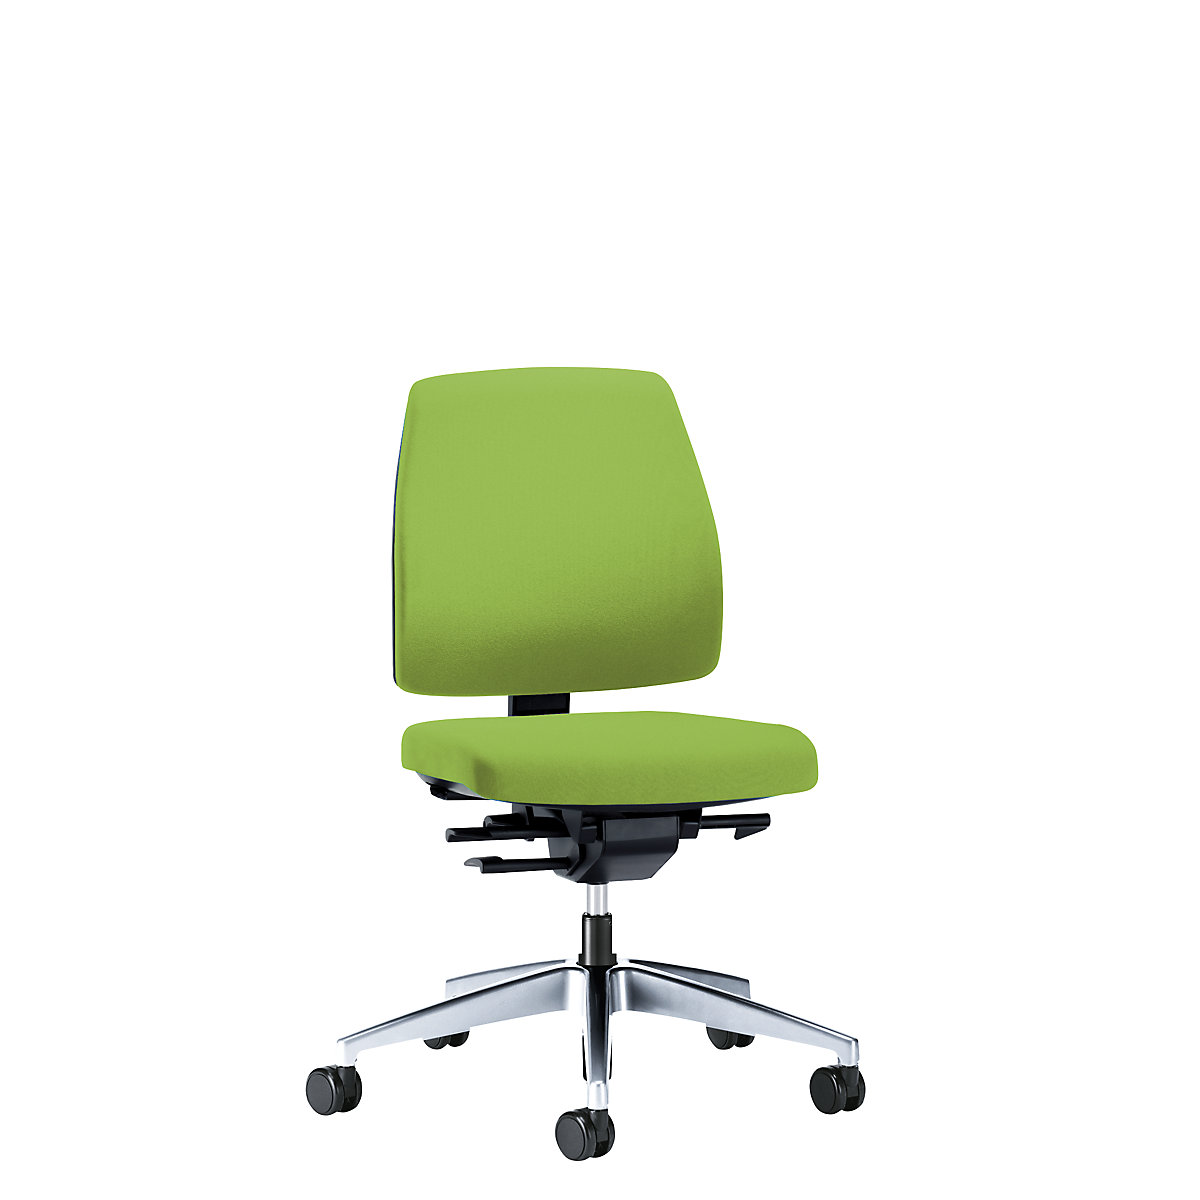 Obrotowe krzesło biurowe GOAL, wys. oparcia 430 mm – interstuhl, szkielet polerowany, z miękkimi rolkami, żółto-zielony, głęb. siedziska 410 mm-5